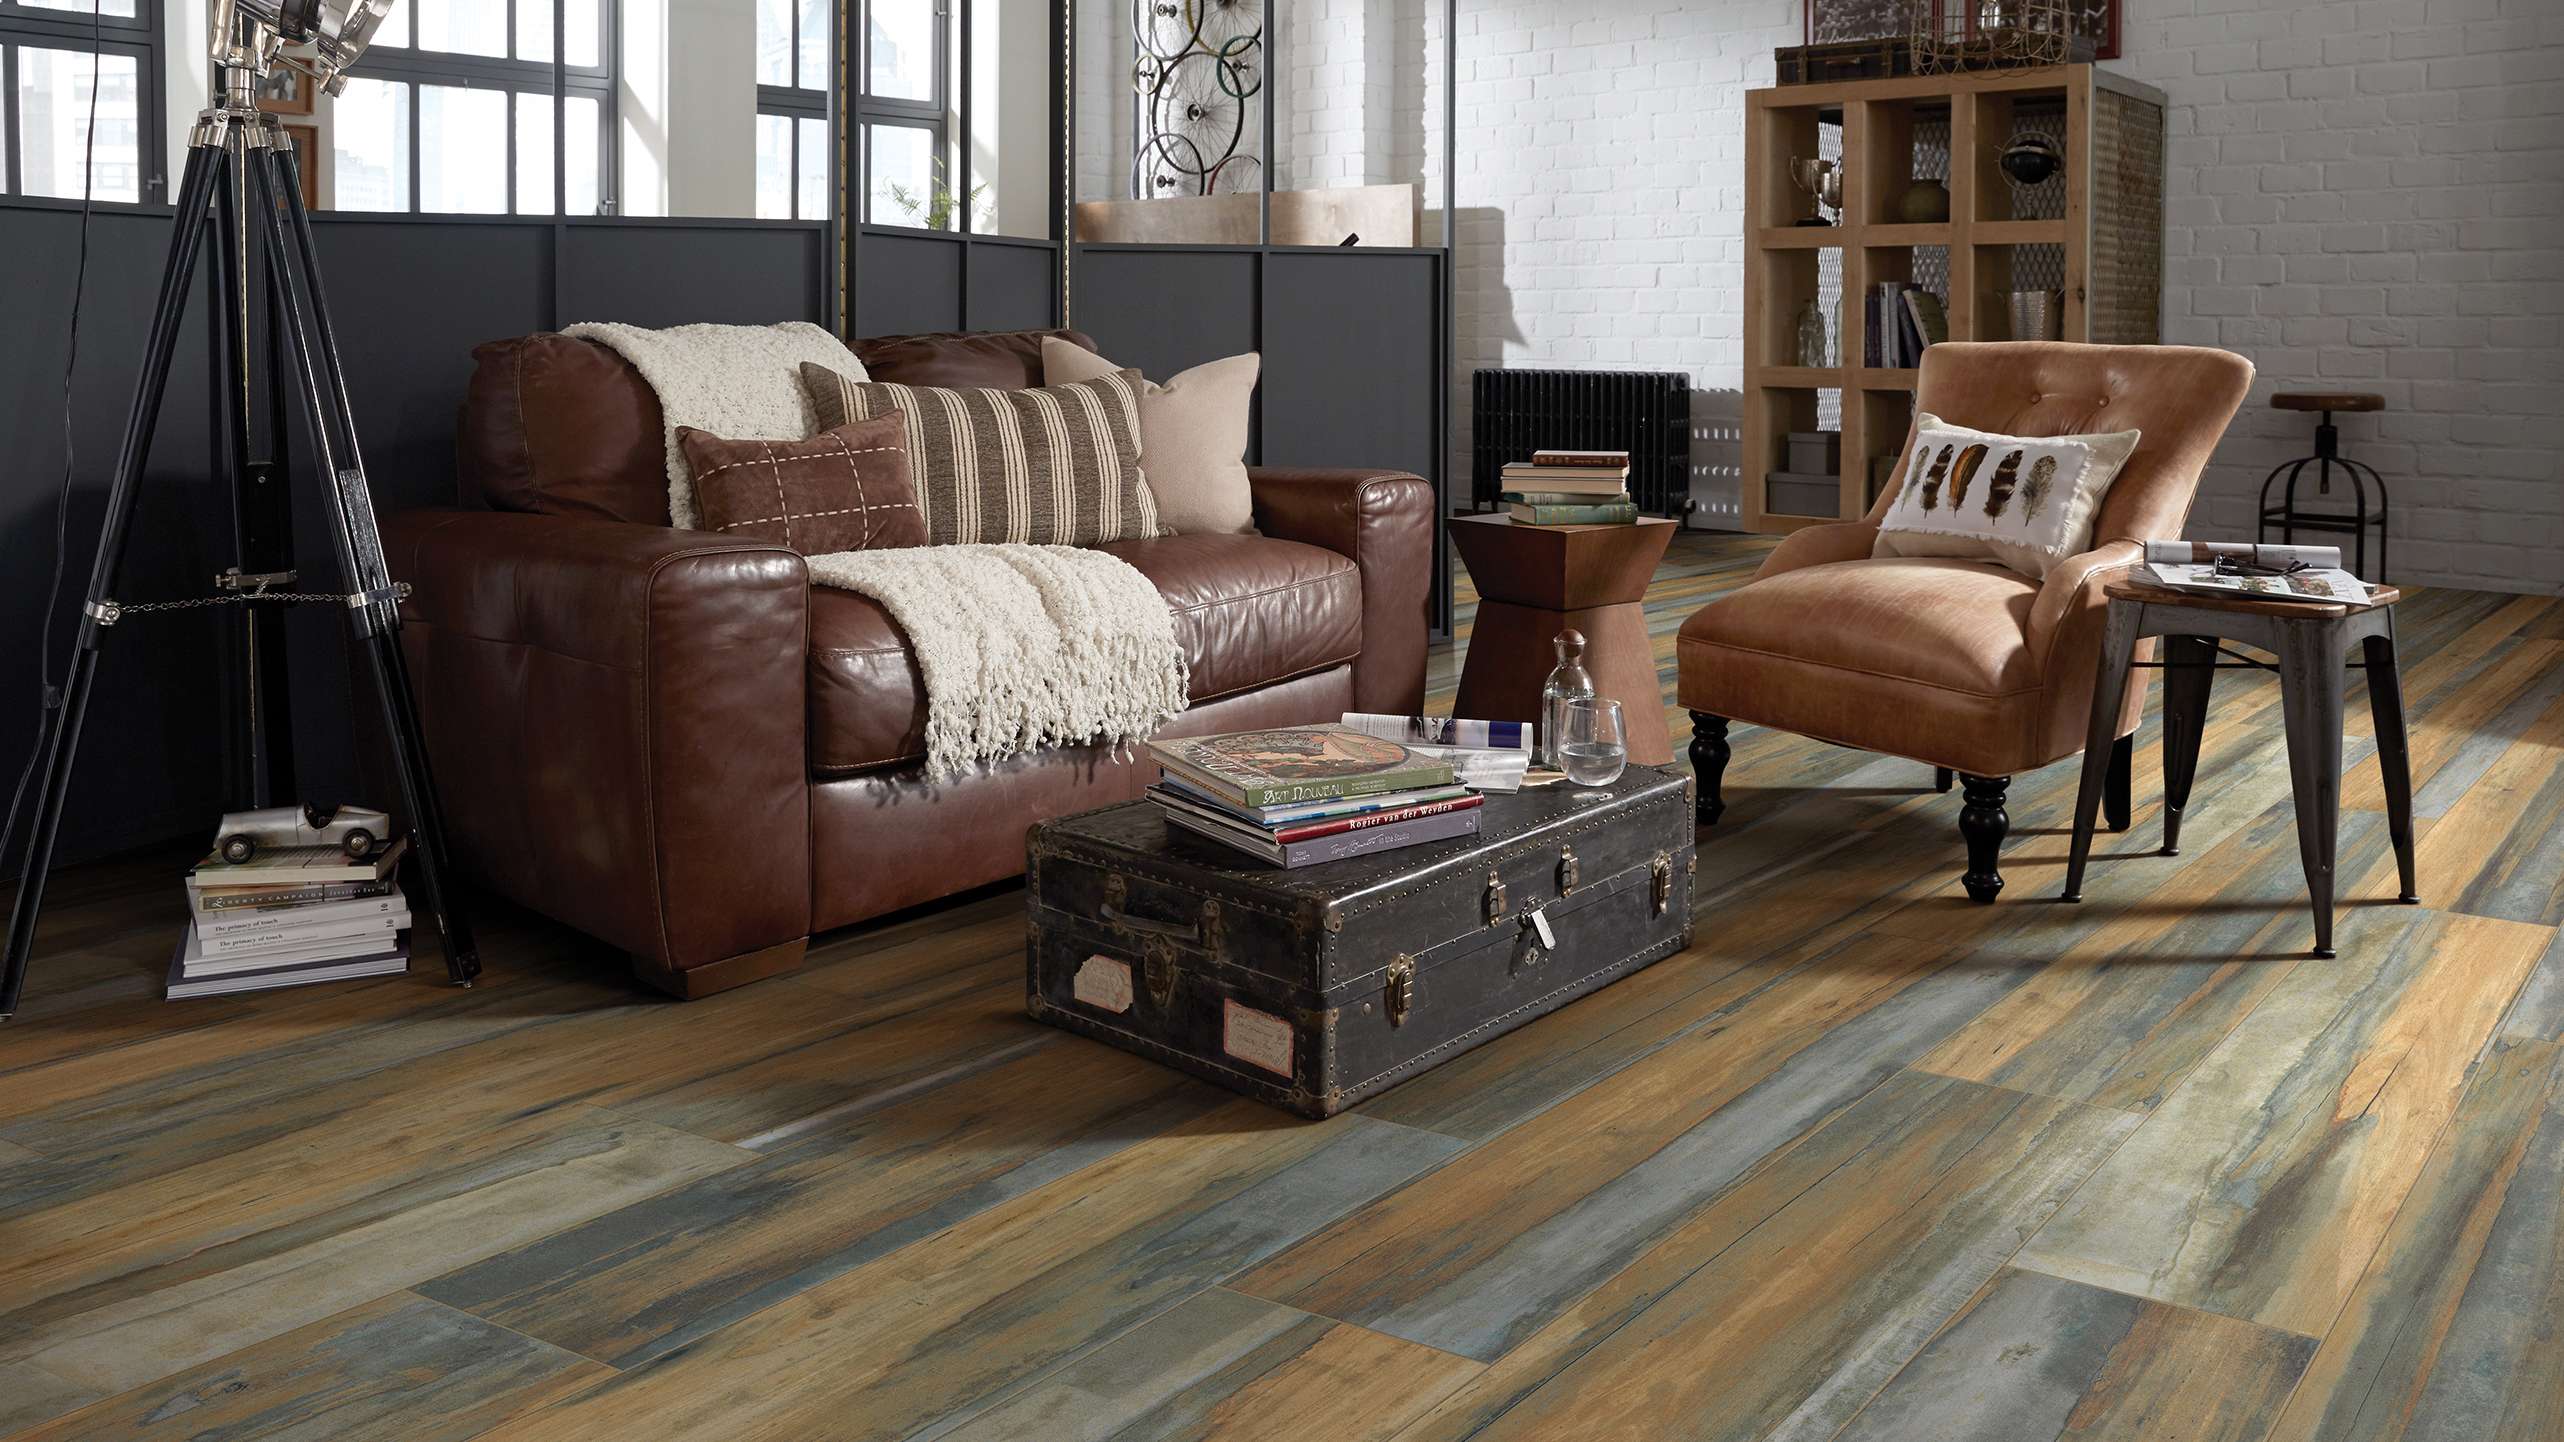 Wood-look tile flooring in a living room.